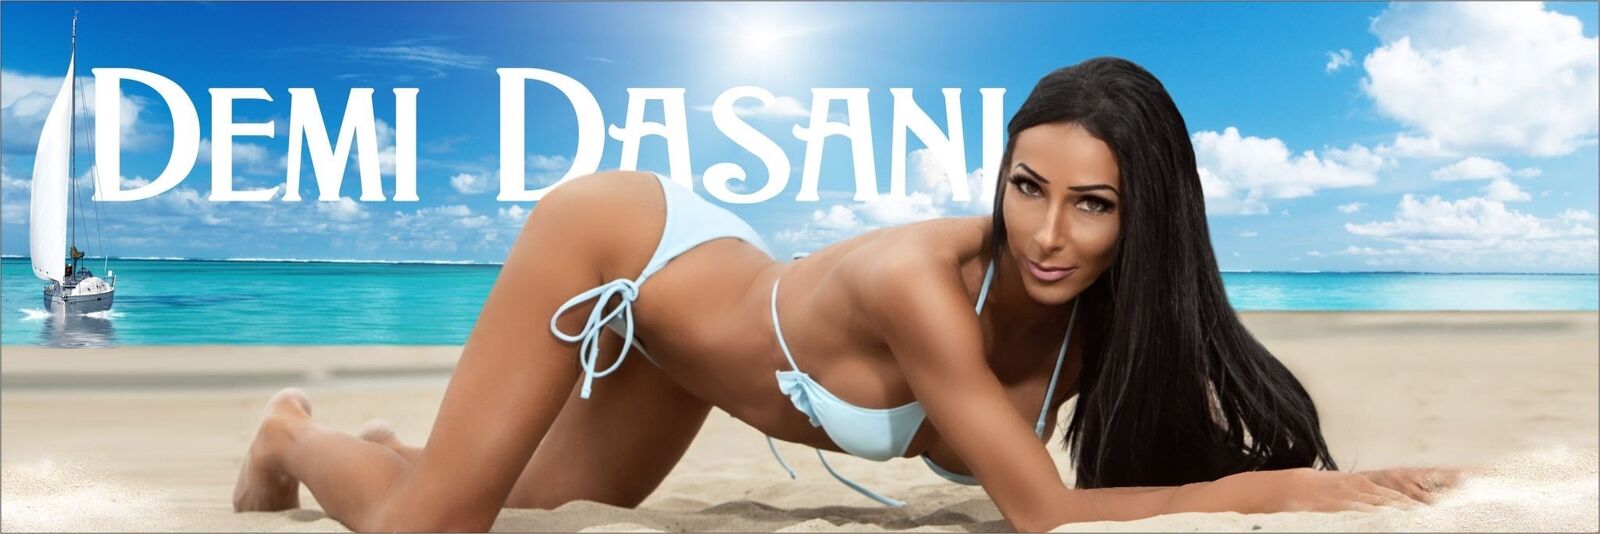 See Demi Dasani profile